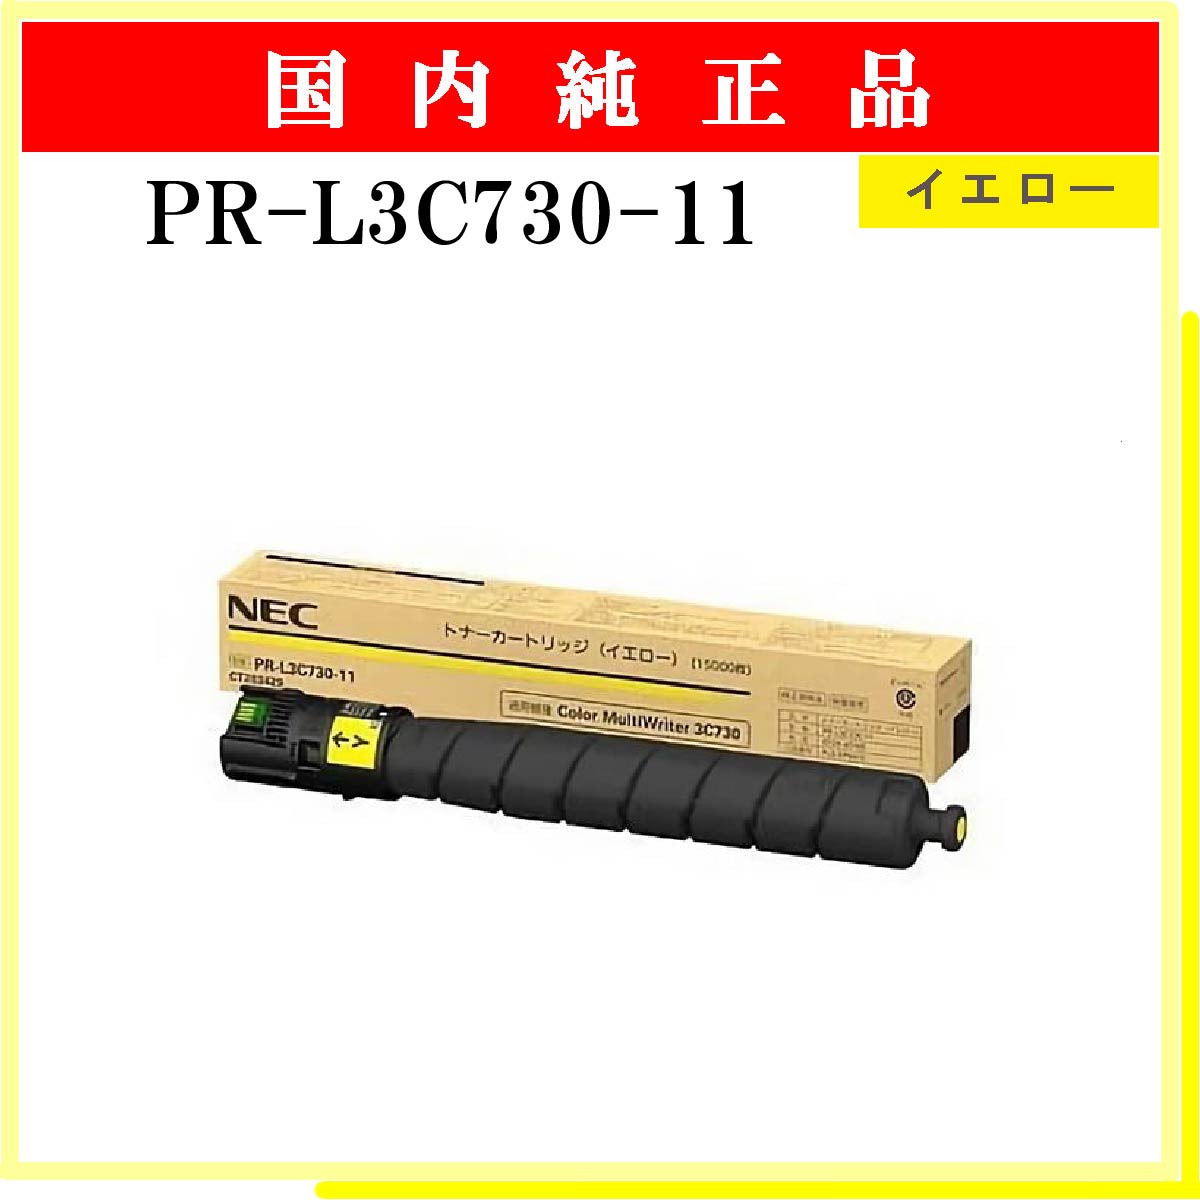 PR-L9600C-19